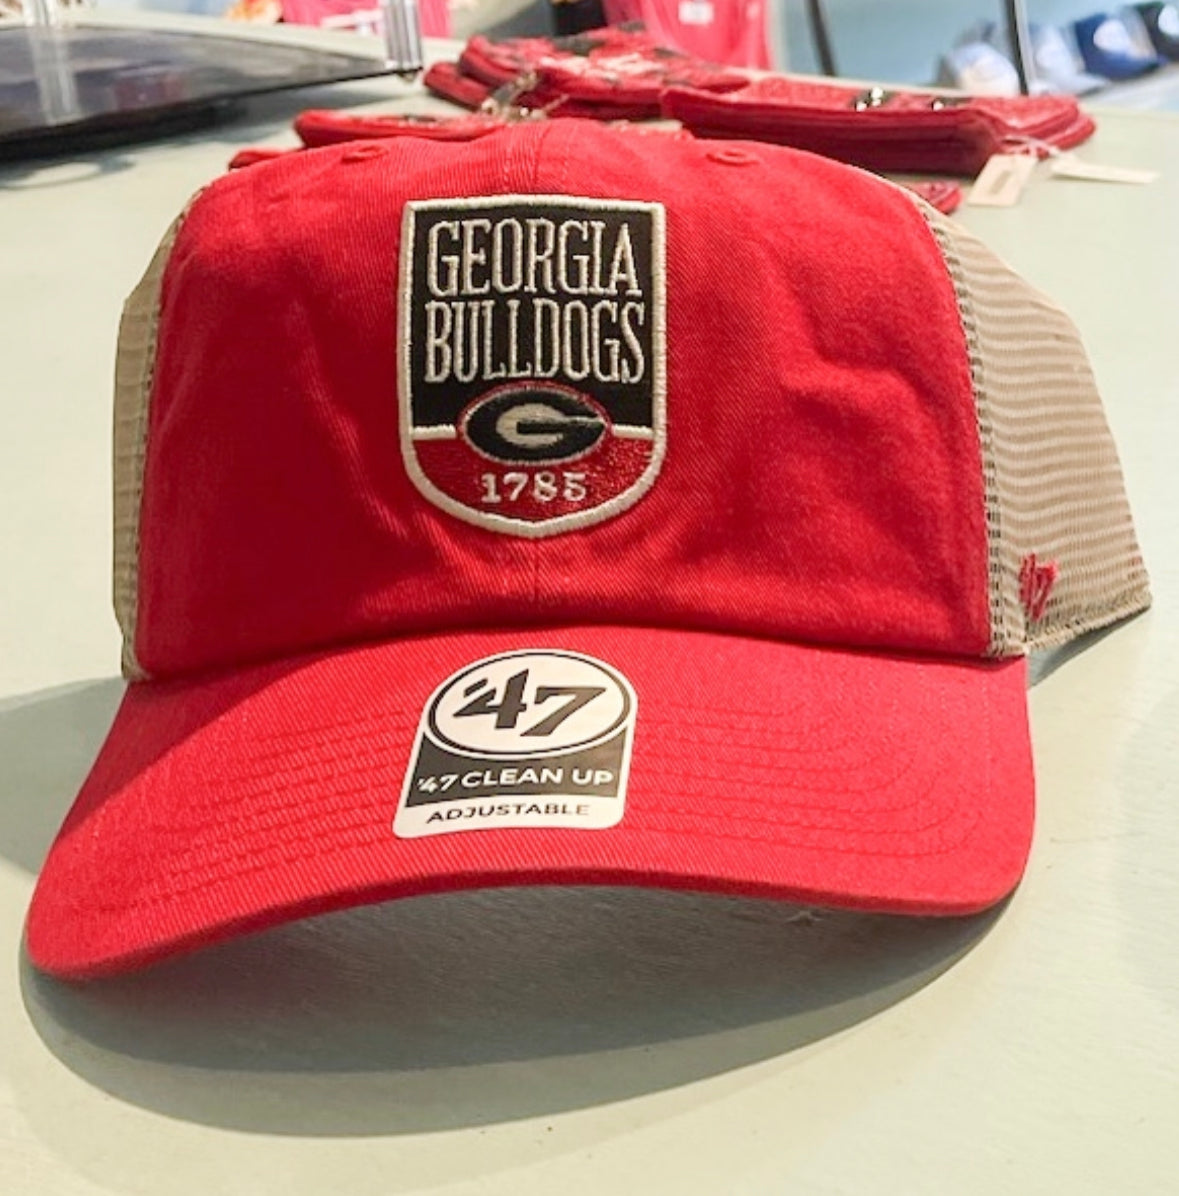 Georgia bulldogs hat